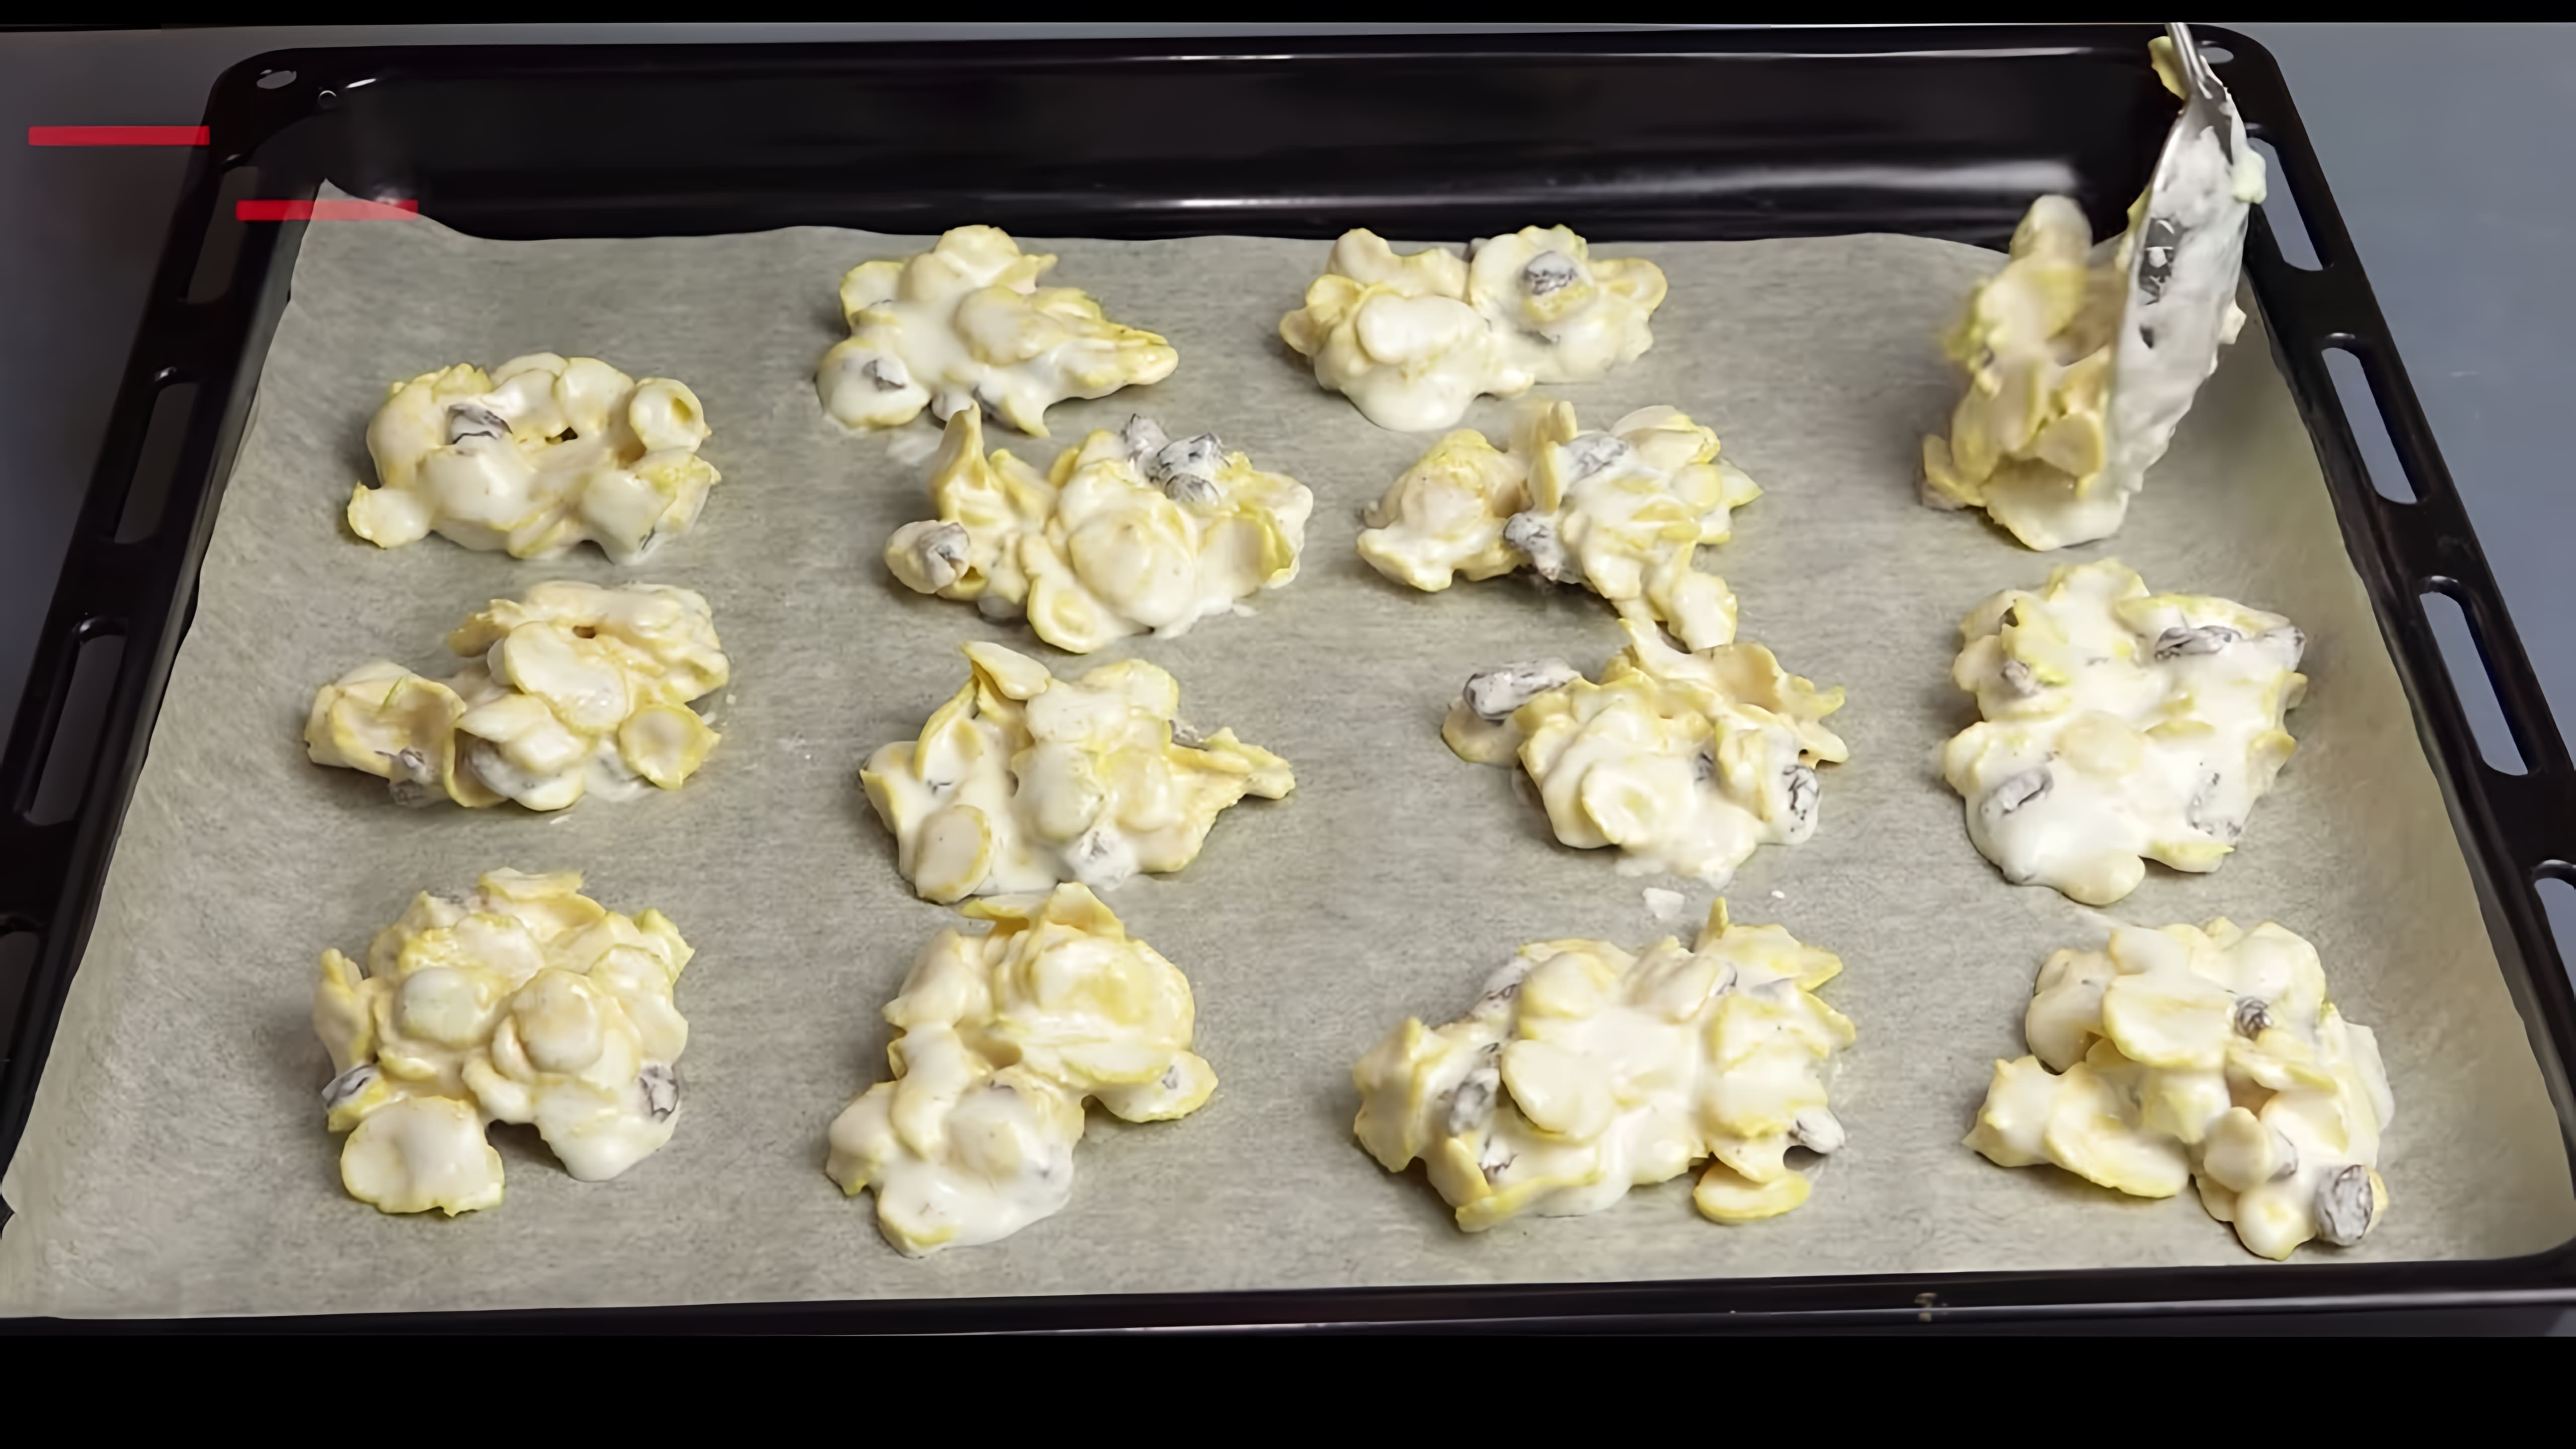 "Печенье из кукурузных хлопьев, которое я больше готовить НЕ БУДУ" - это видео-ролик, в котором я рассказываю о своем опыте приготовления печенья из кукурузных хлопьев